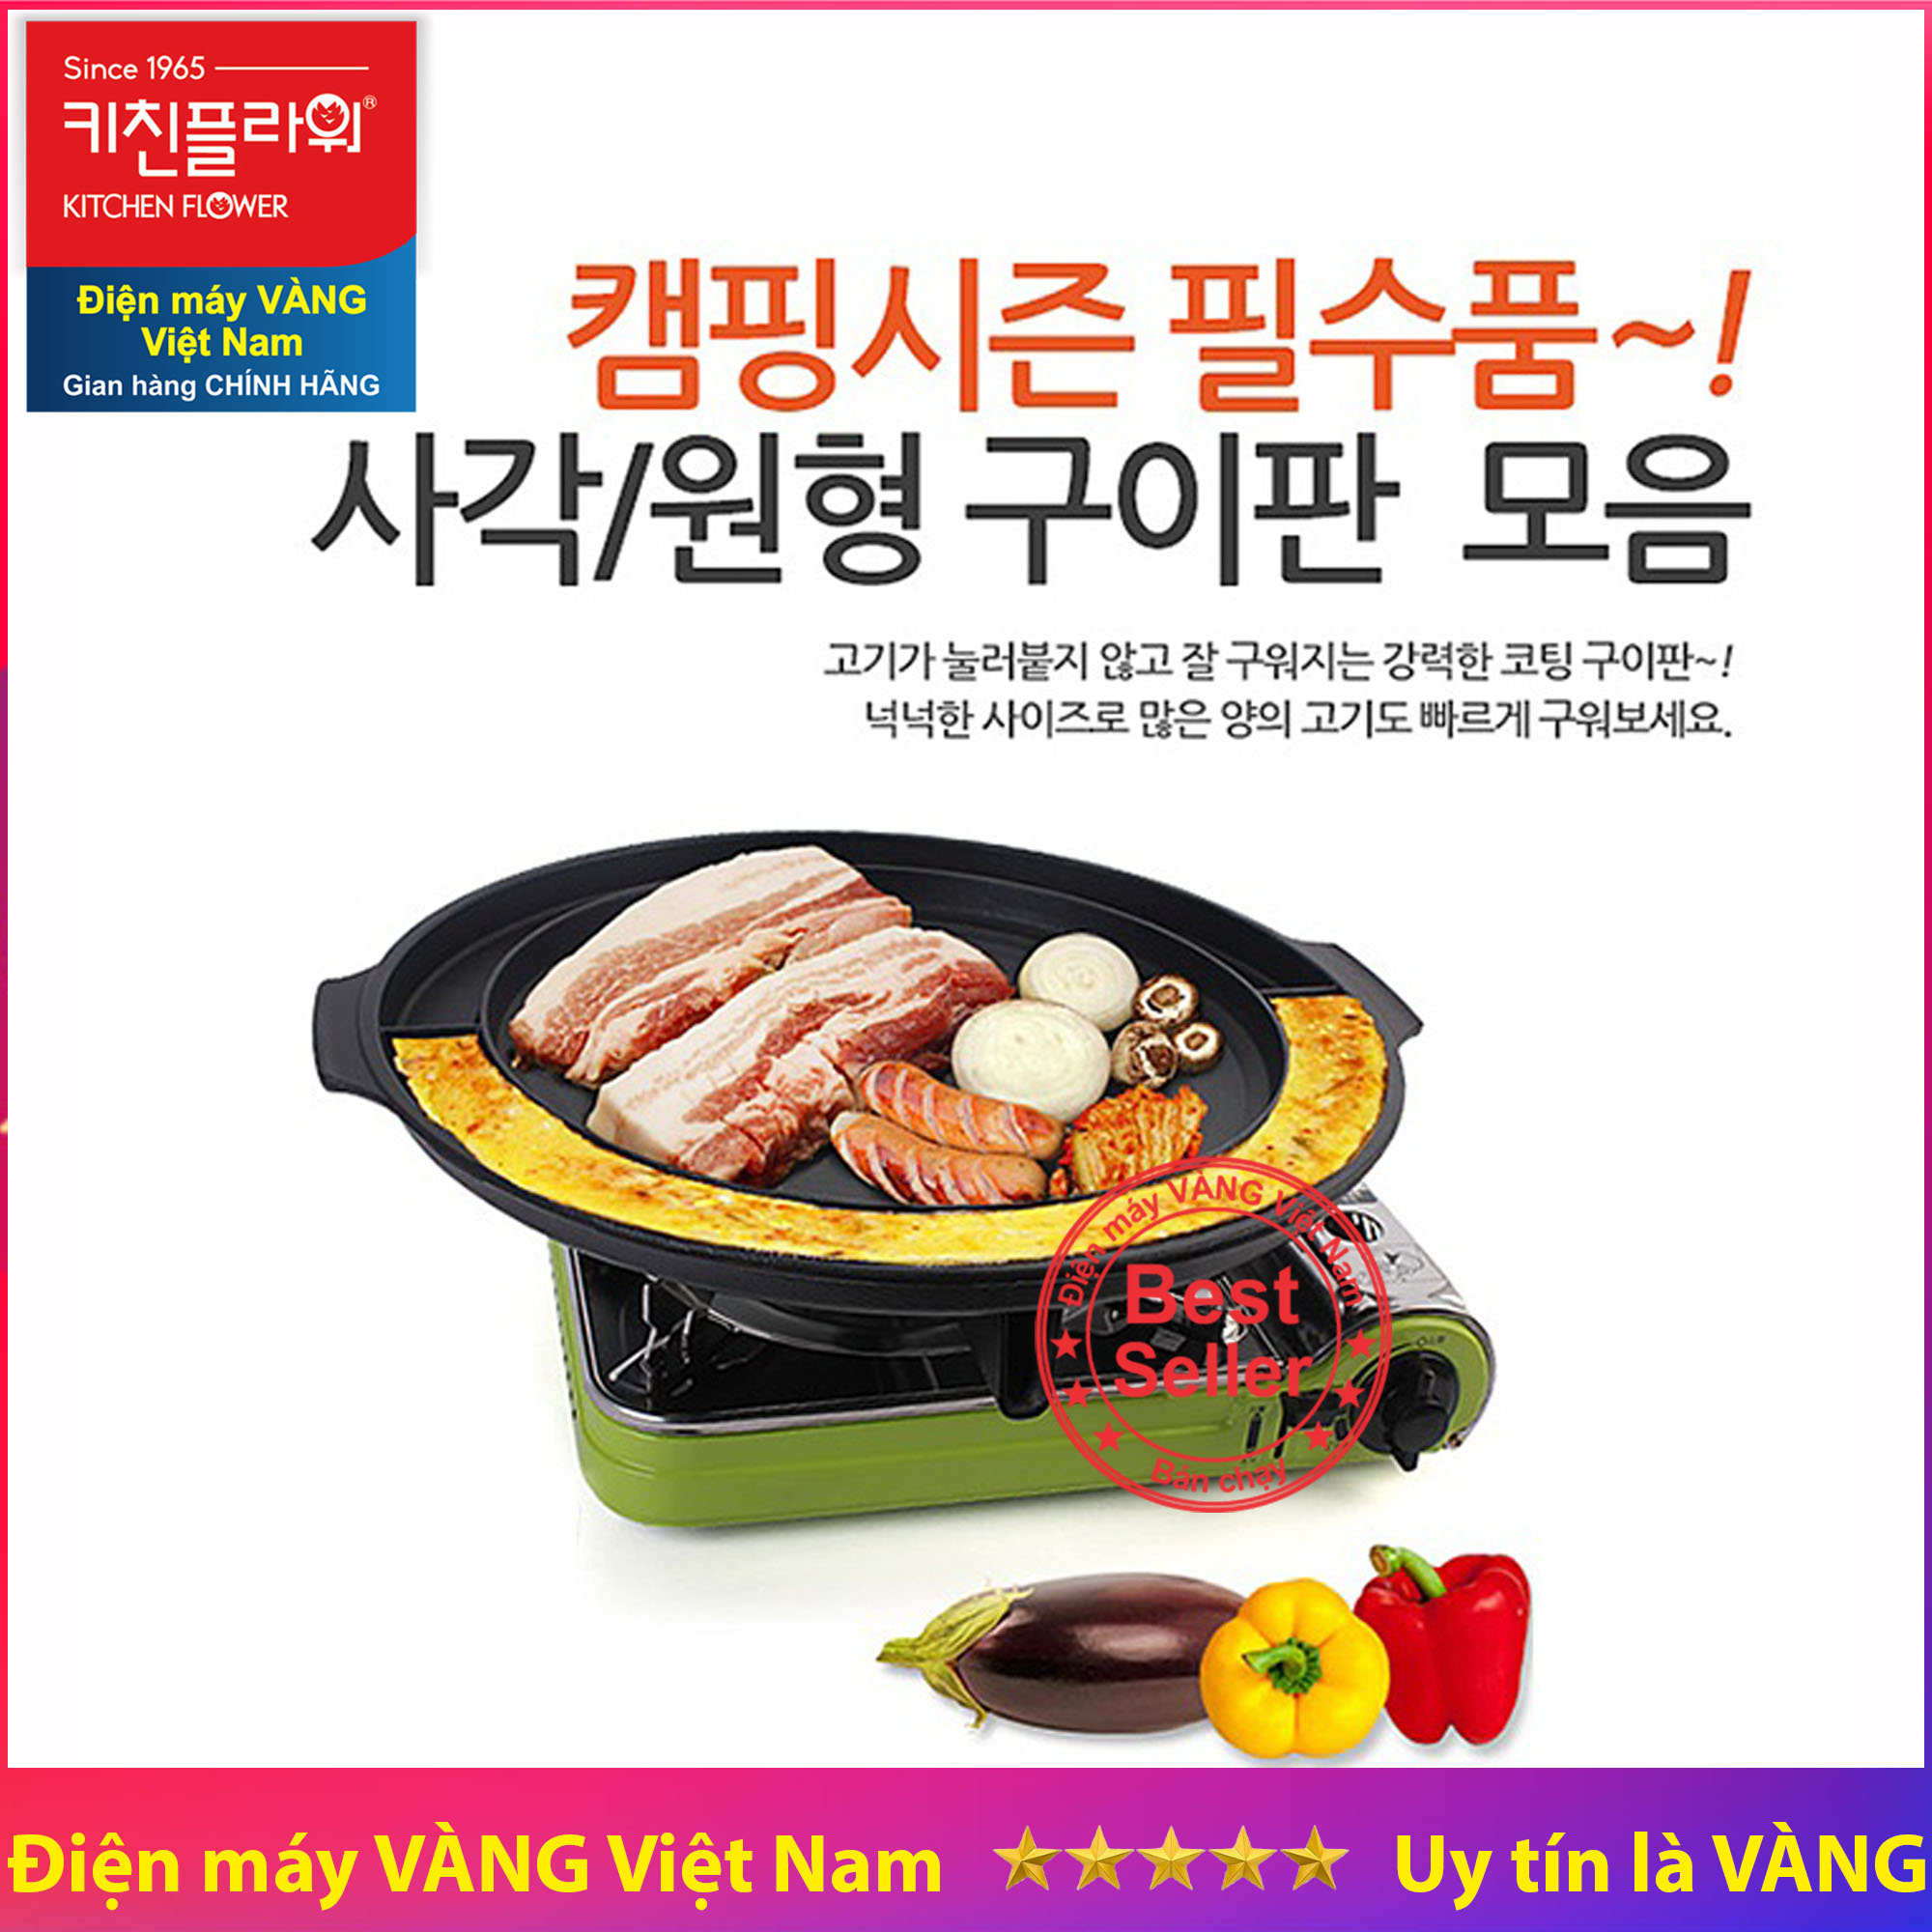 Đĩa nướng trứng hấp Kitchen Flower Hàn Quốc 37cm NY-2499